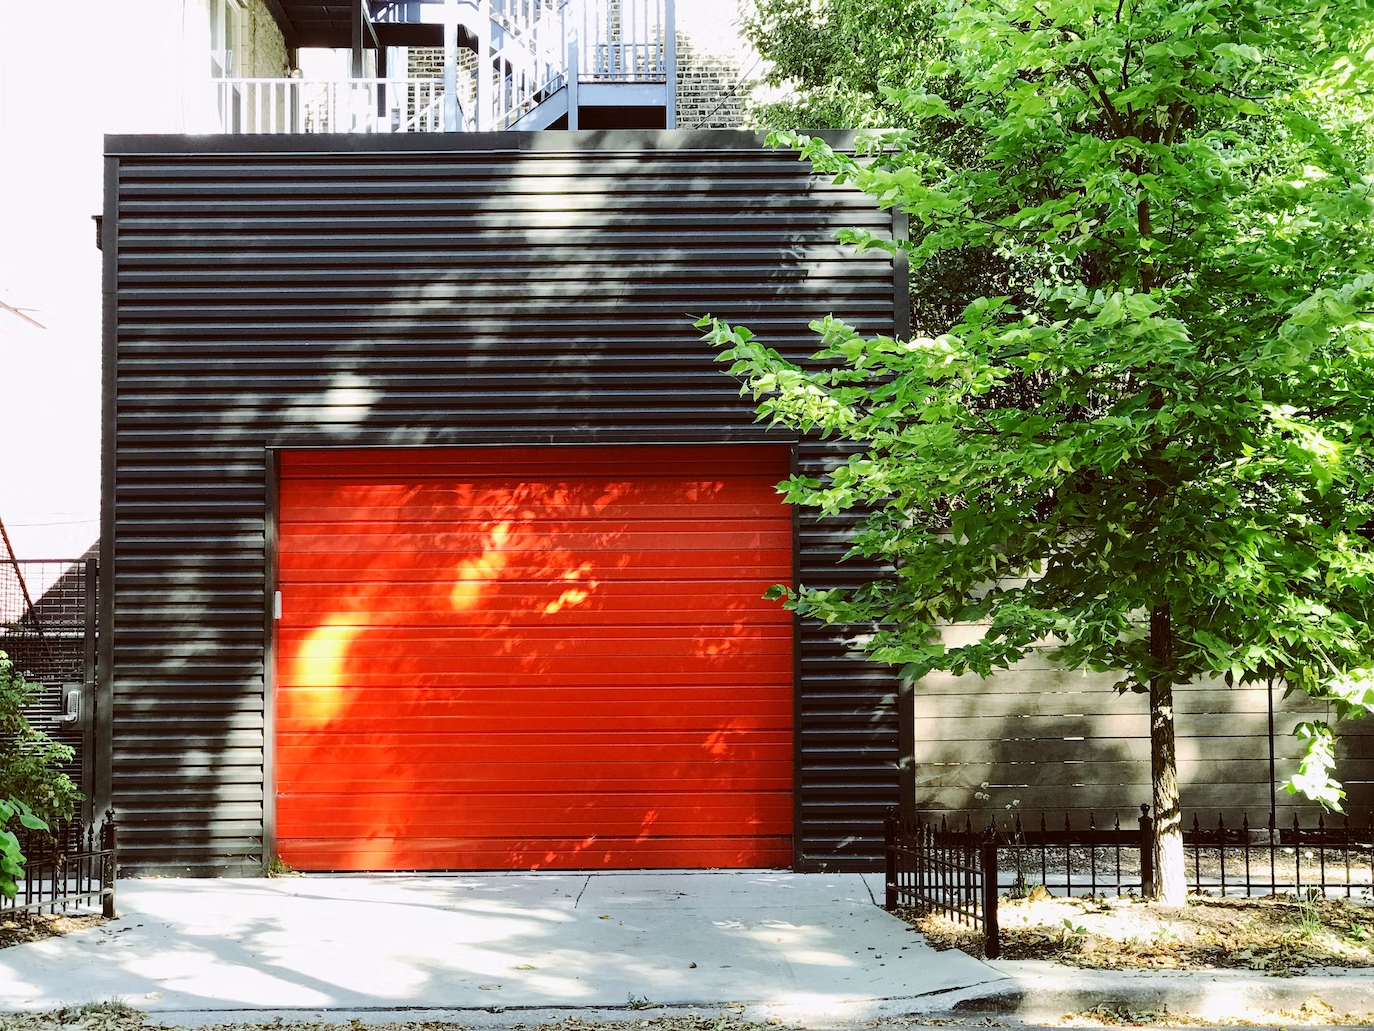 A residential garage door